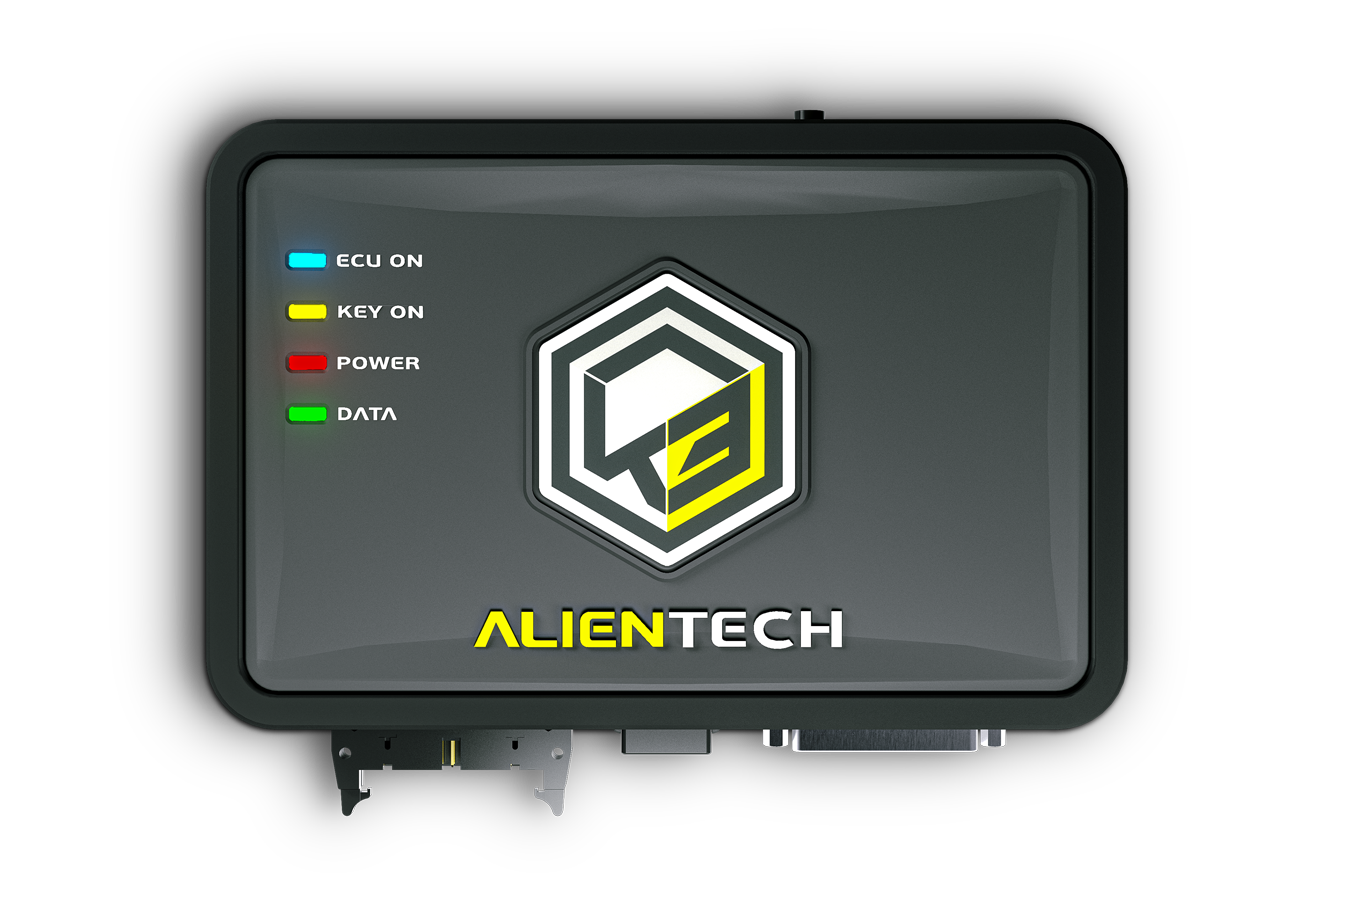 Alientech - KESSv2 MAN 12 pin diagnostic connector cable